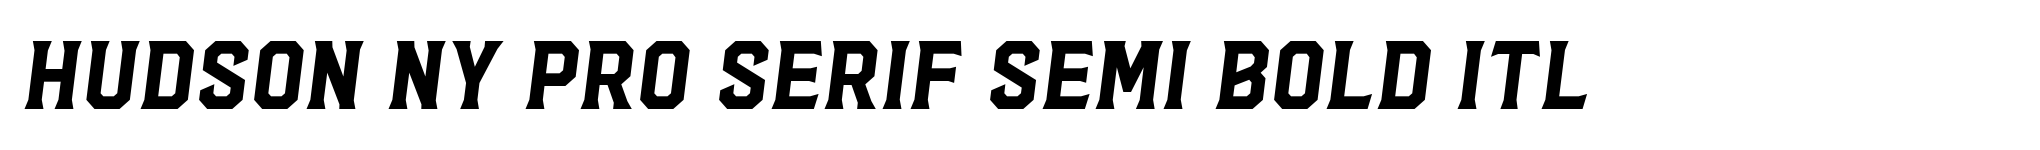 Hudson NY Pro Serif Semi Bold Itl image